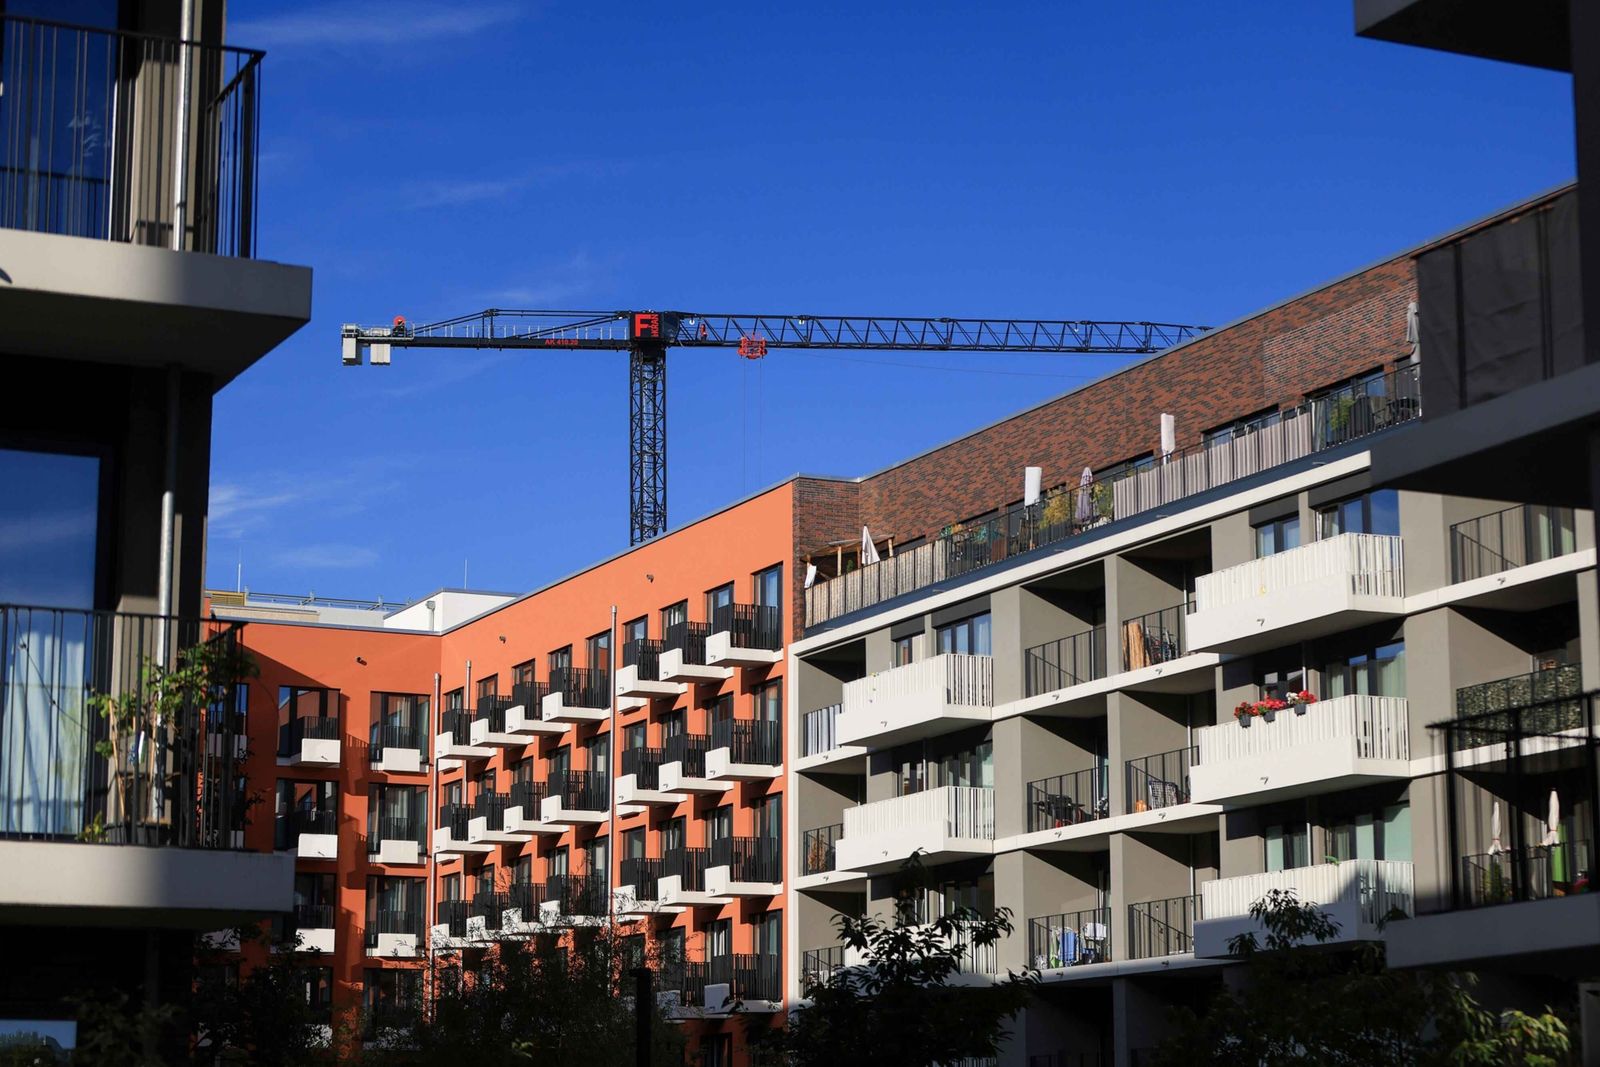 أسعار المنازل في ألمانيا تتراجع بأكبر وتيرة منذ عام 2000